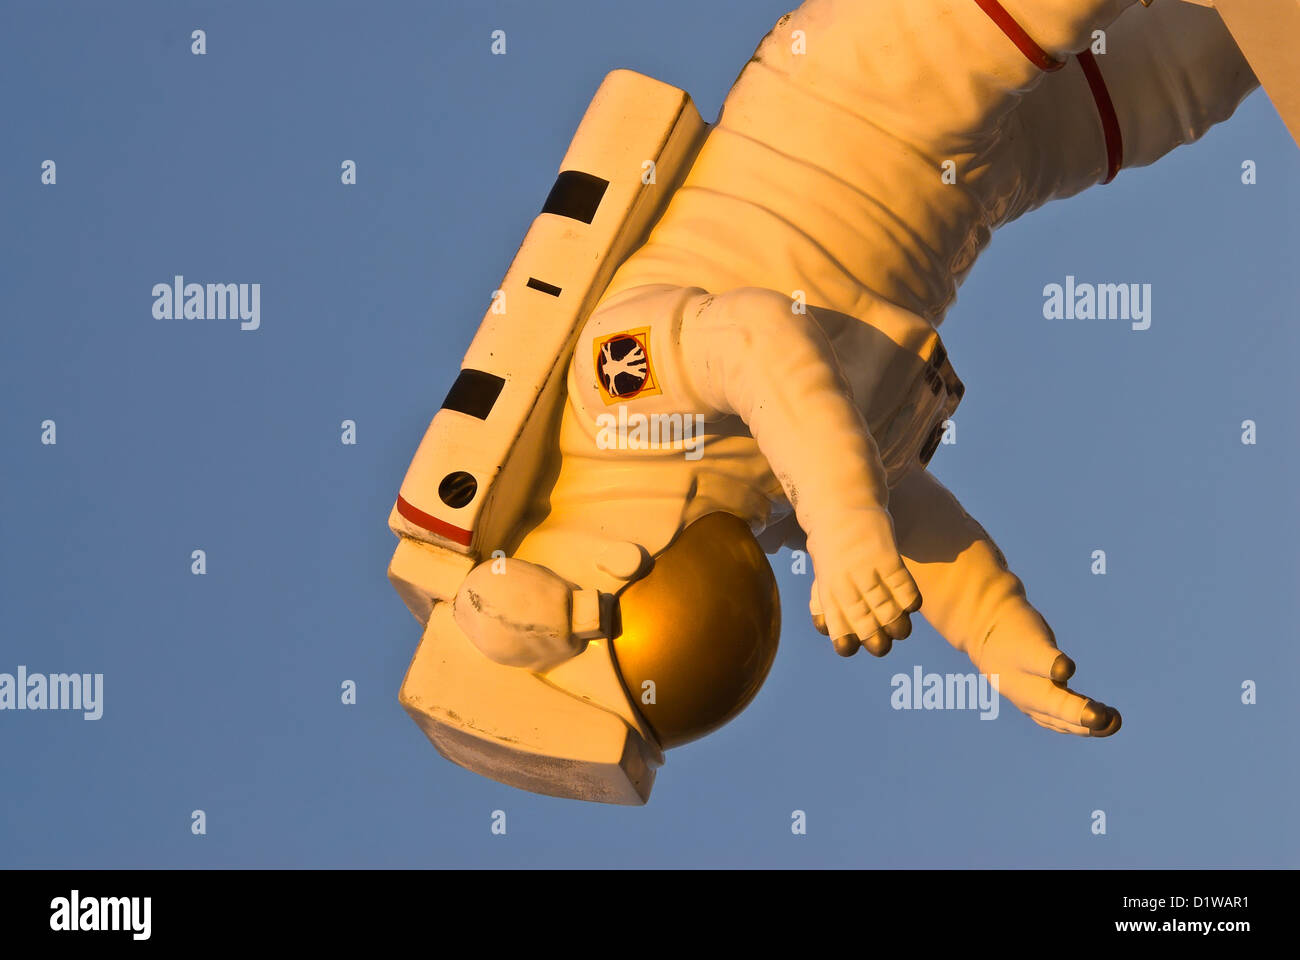 Modello di astronauta della NASA floating capovolto nello spazio apesanteur Kennedy Space Center Visitor Center, Florida Foto Stock